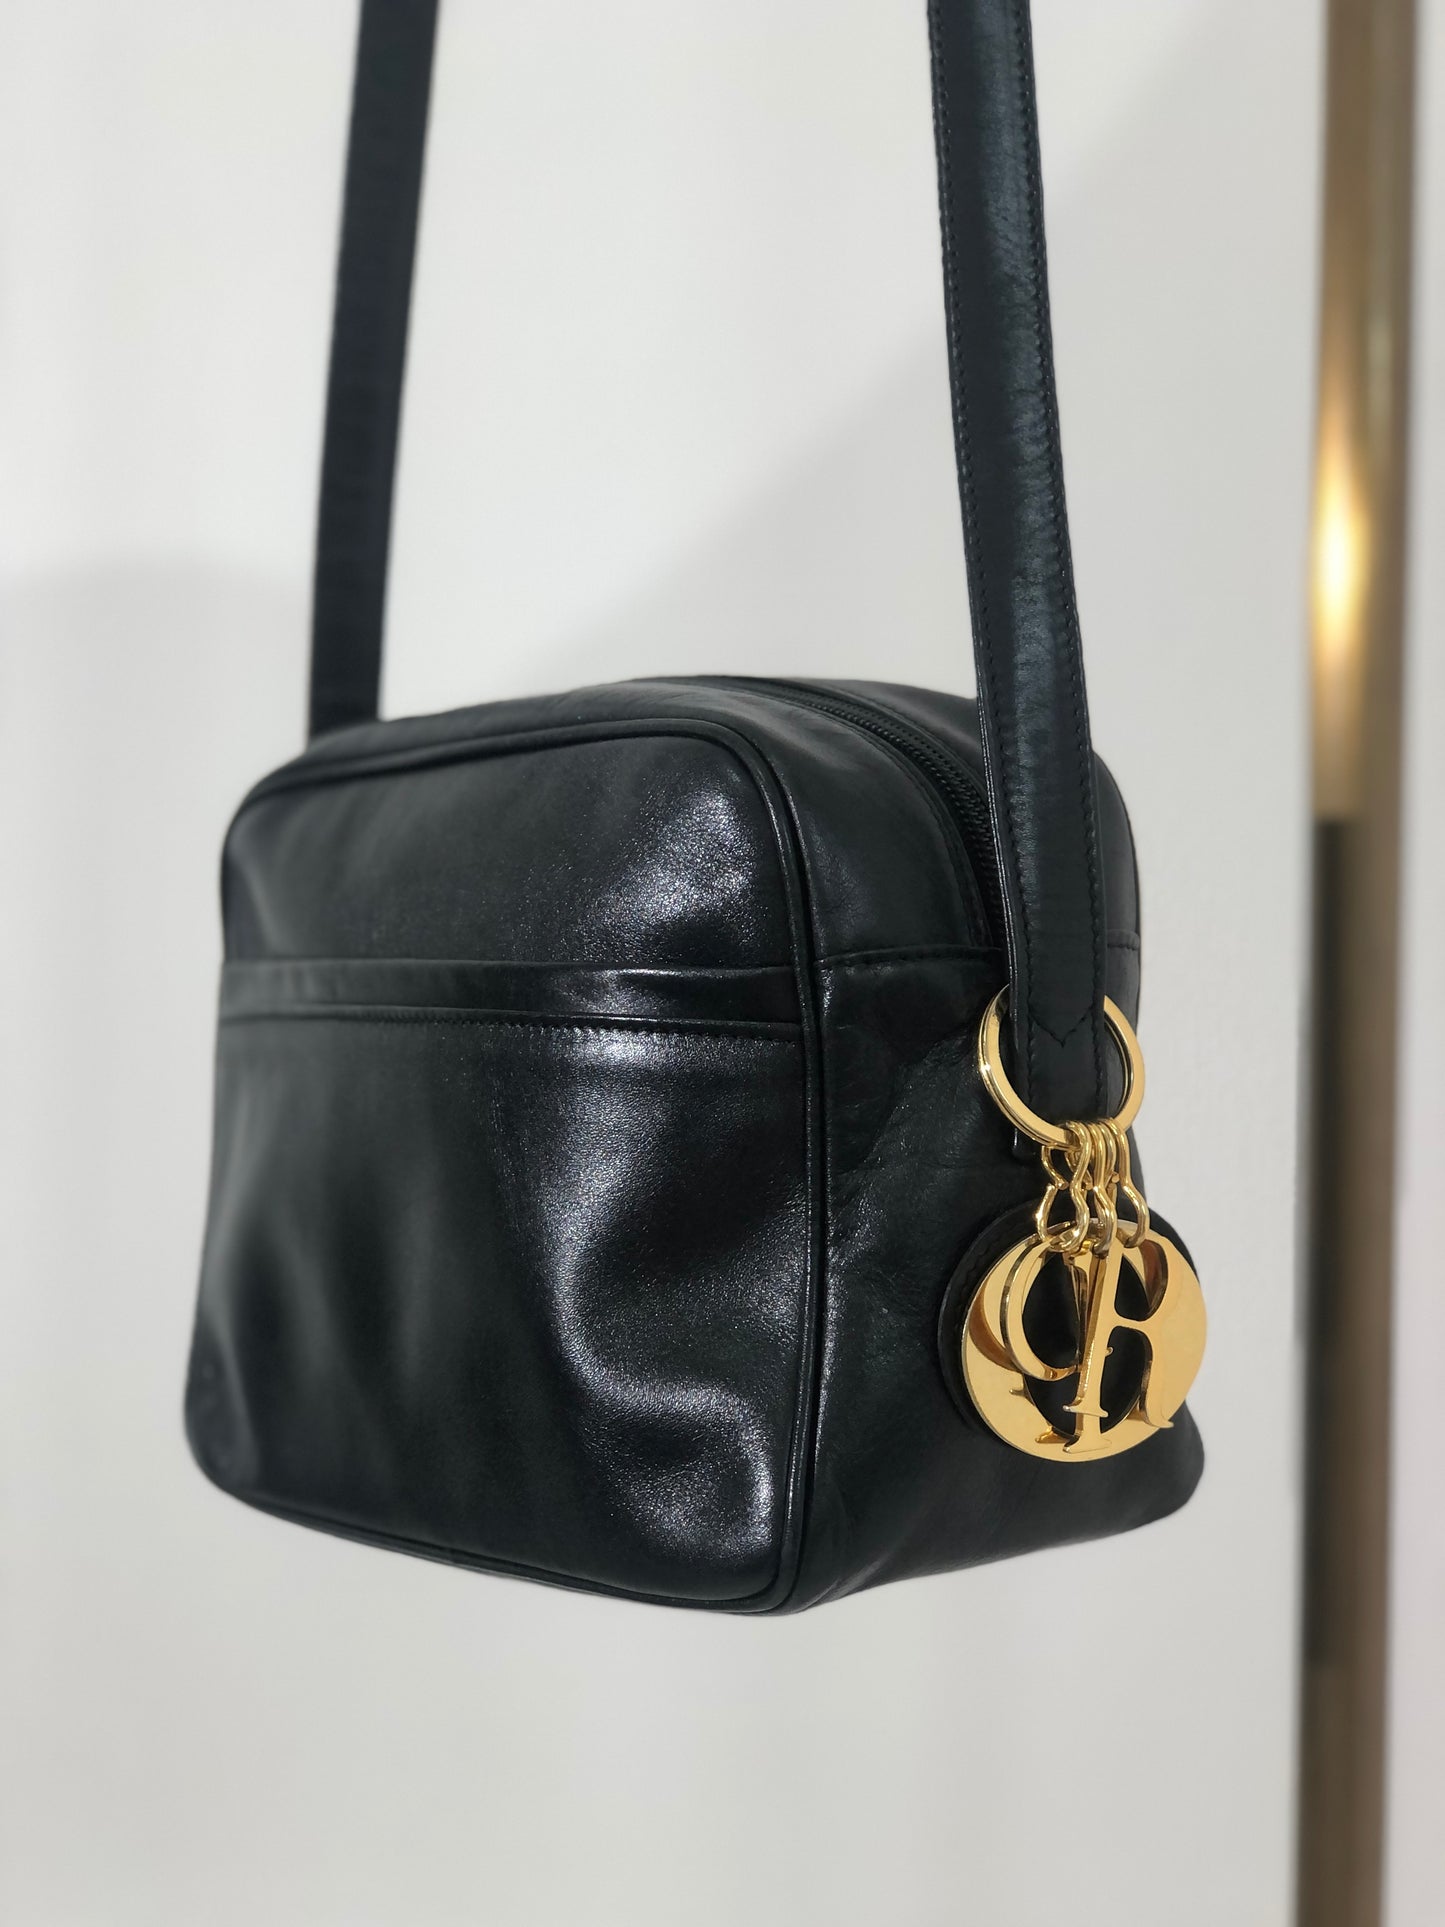 Christian Dior Logo Charm Leather Crossbody Shoulder bag Black Vintage gyuw6k